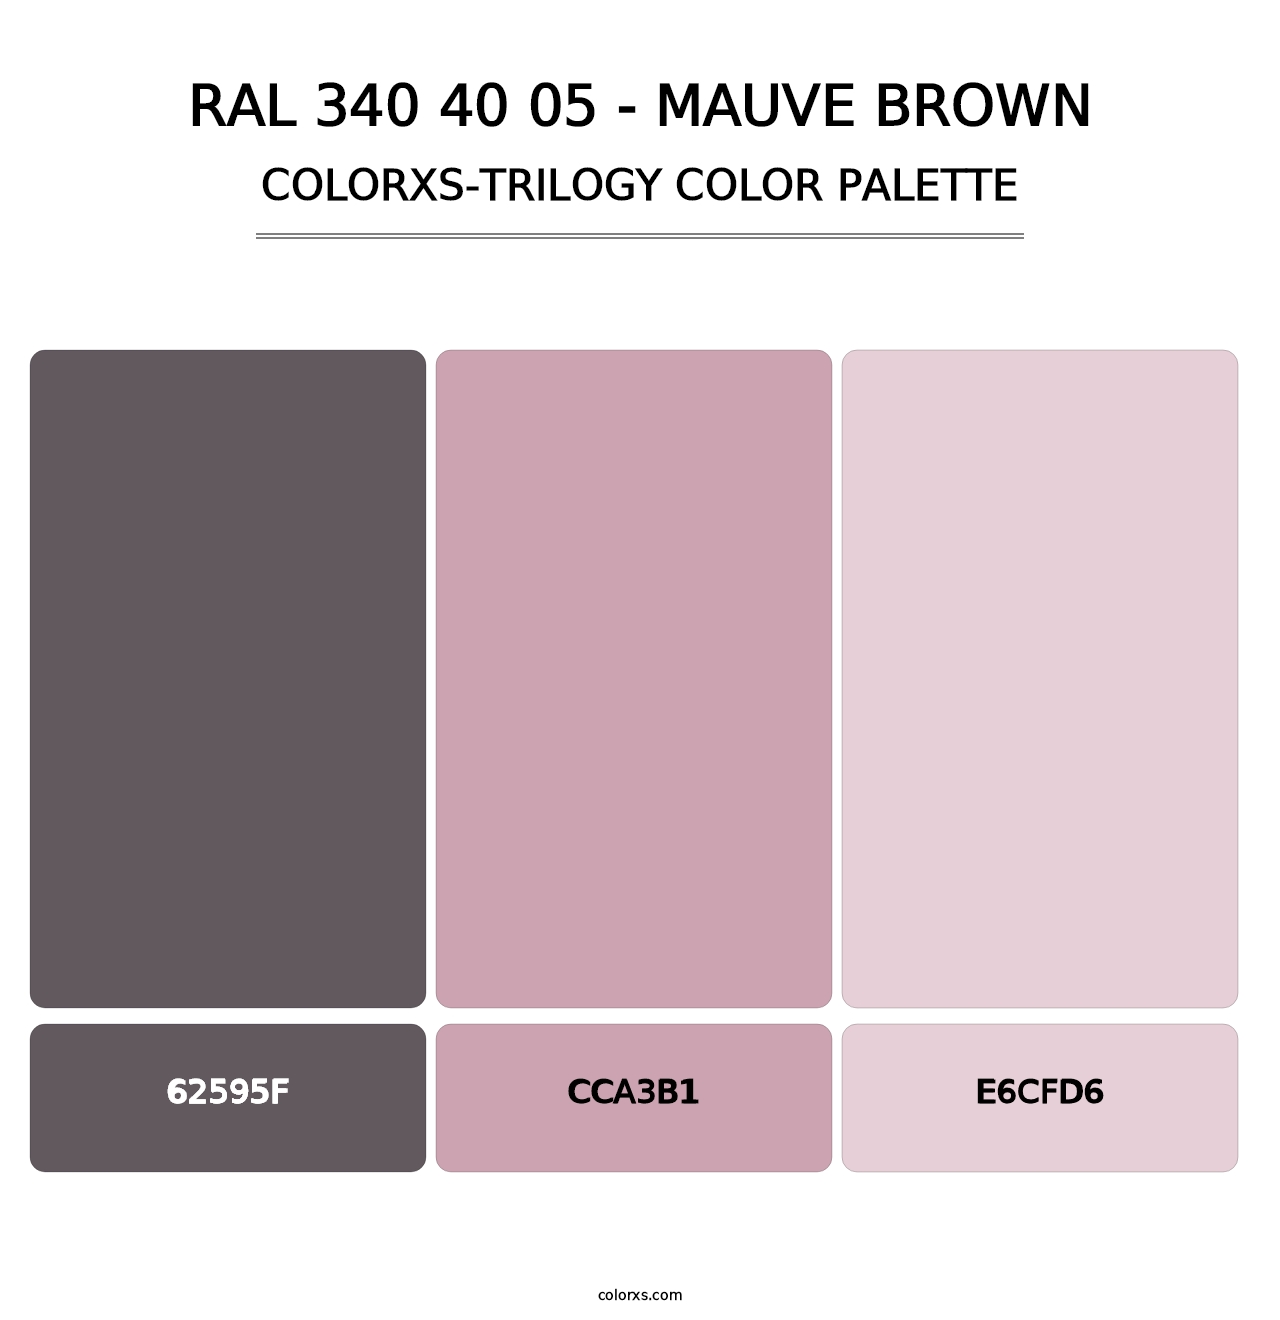 RAL 340 40 05 - Mauve Brown - Colorxs Trilogy Palette